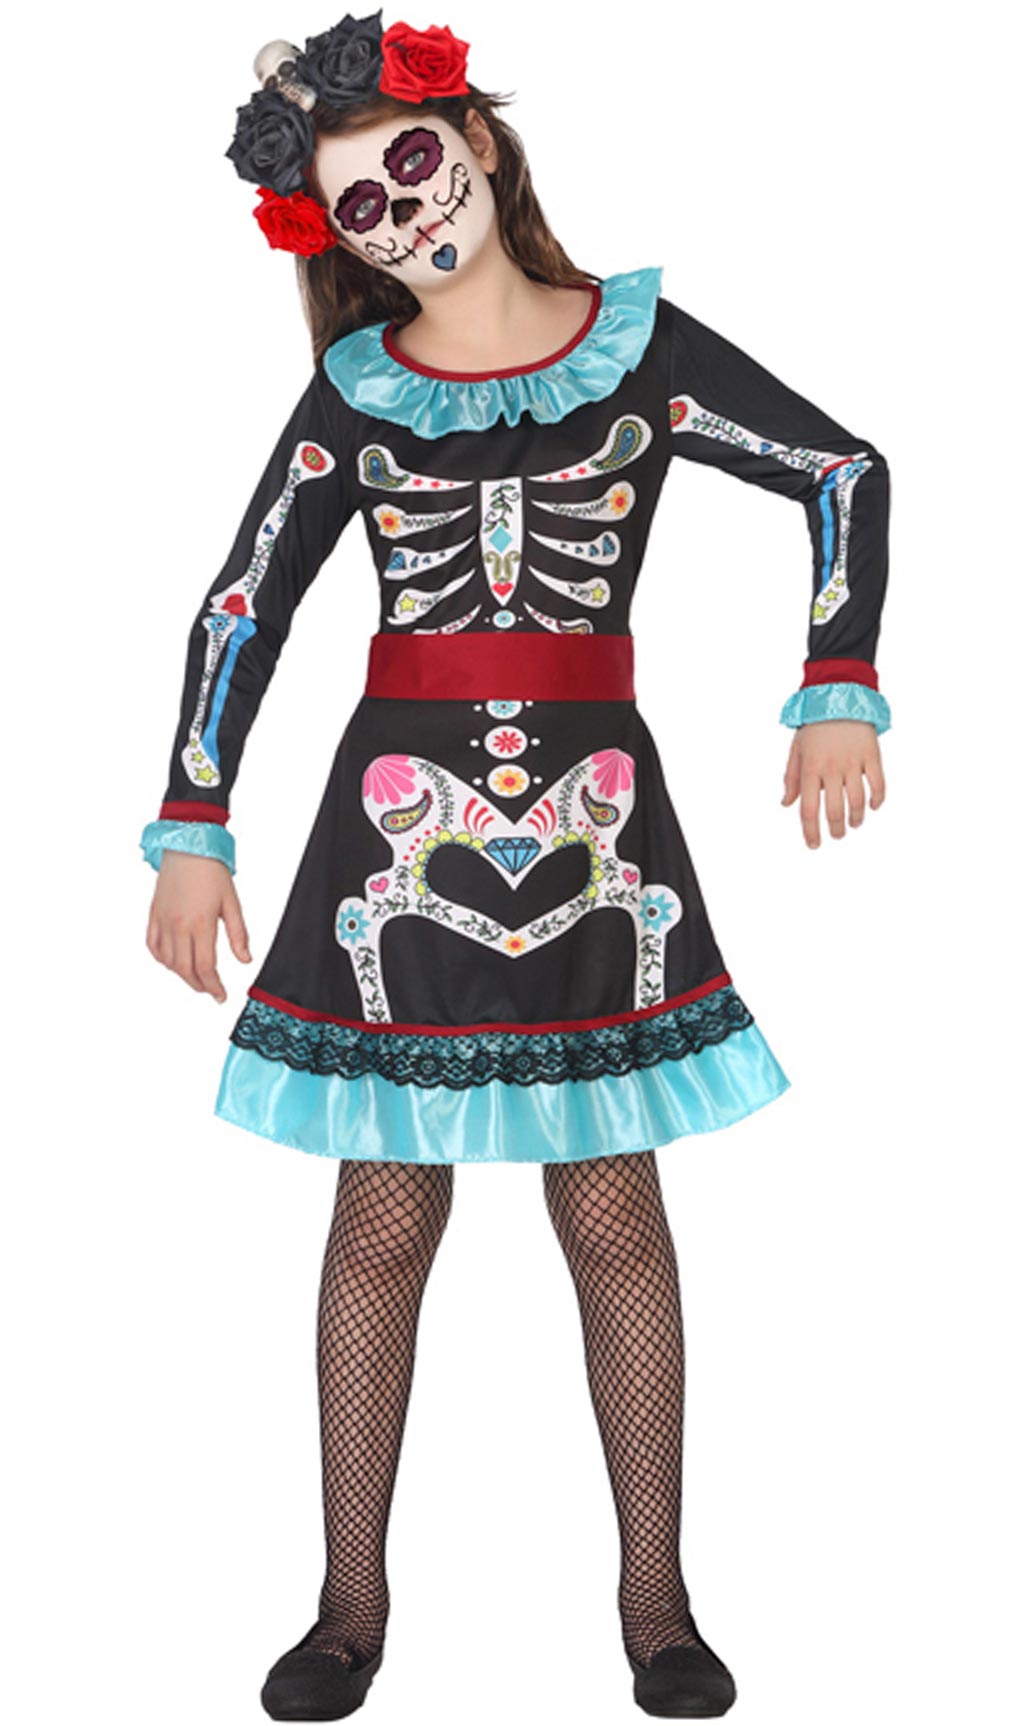 Disfraz de pirata para niña con gorro, vestido tutú para Halloween,  carnaval o cumpleaños -  México